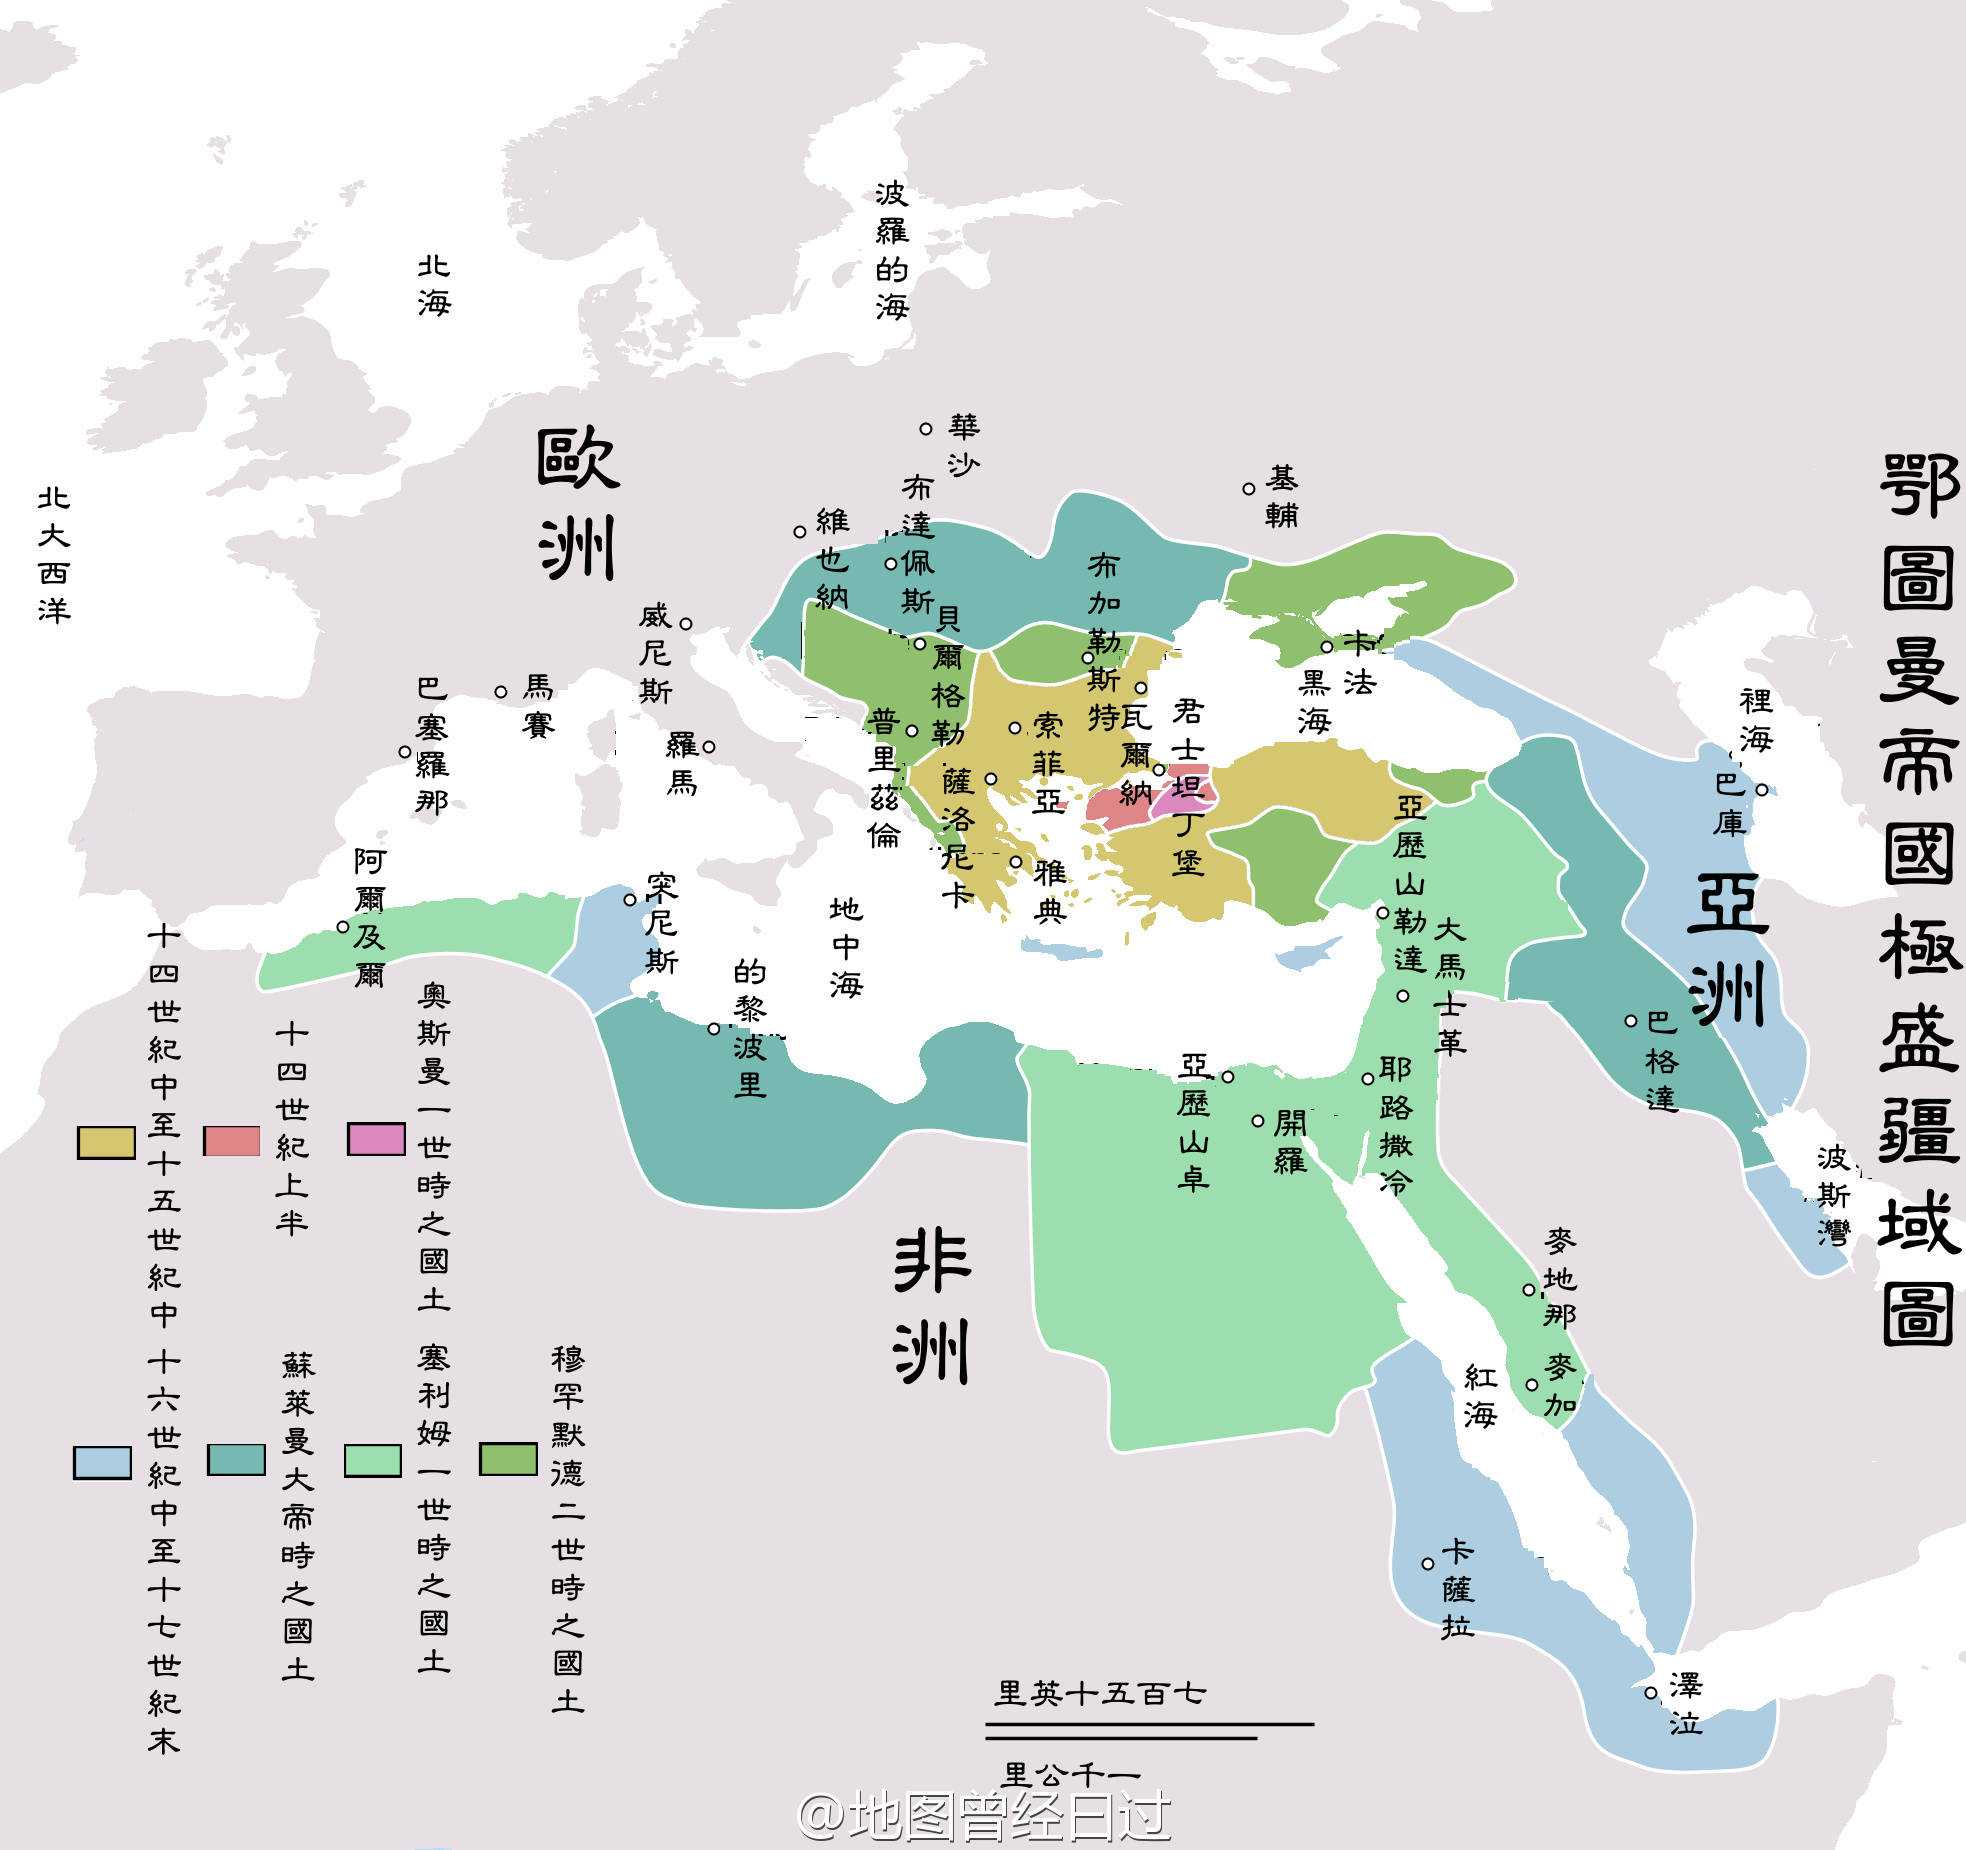 有时候用地图说话是真方便,奥斯曼帝国作为最后一个横跨欧亚非三粗揶